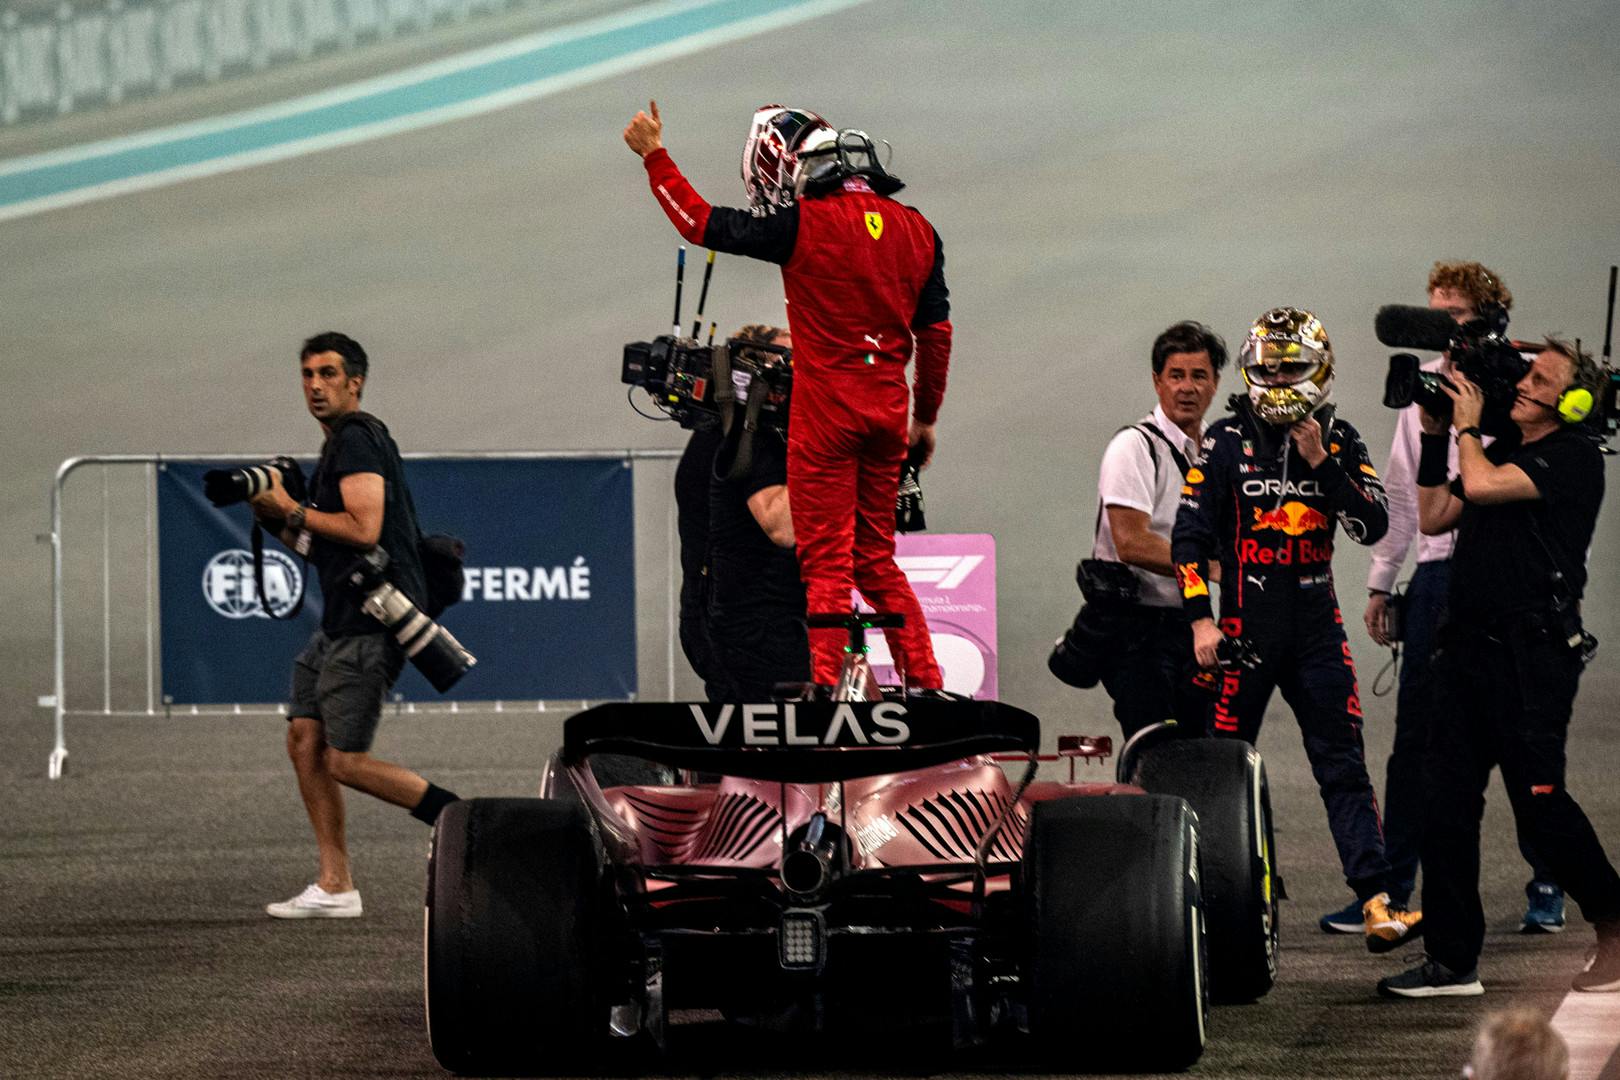 Leclerc liczy, że zmiana szefa nie zepsuje początku sezonu Ferrari